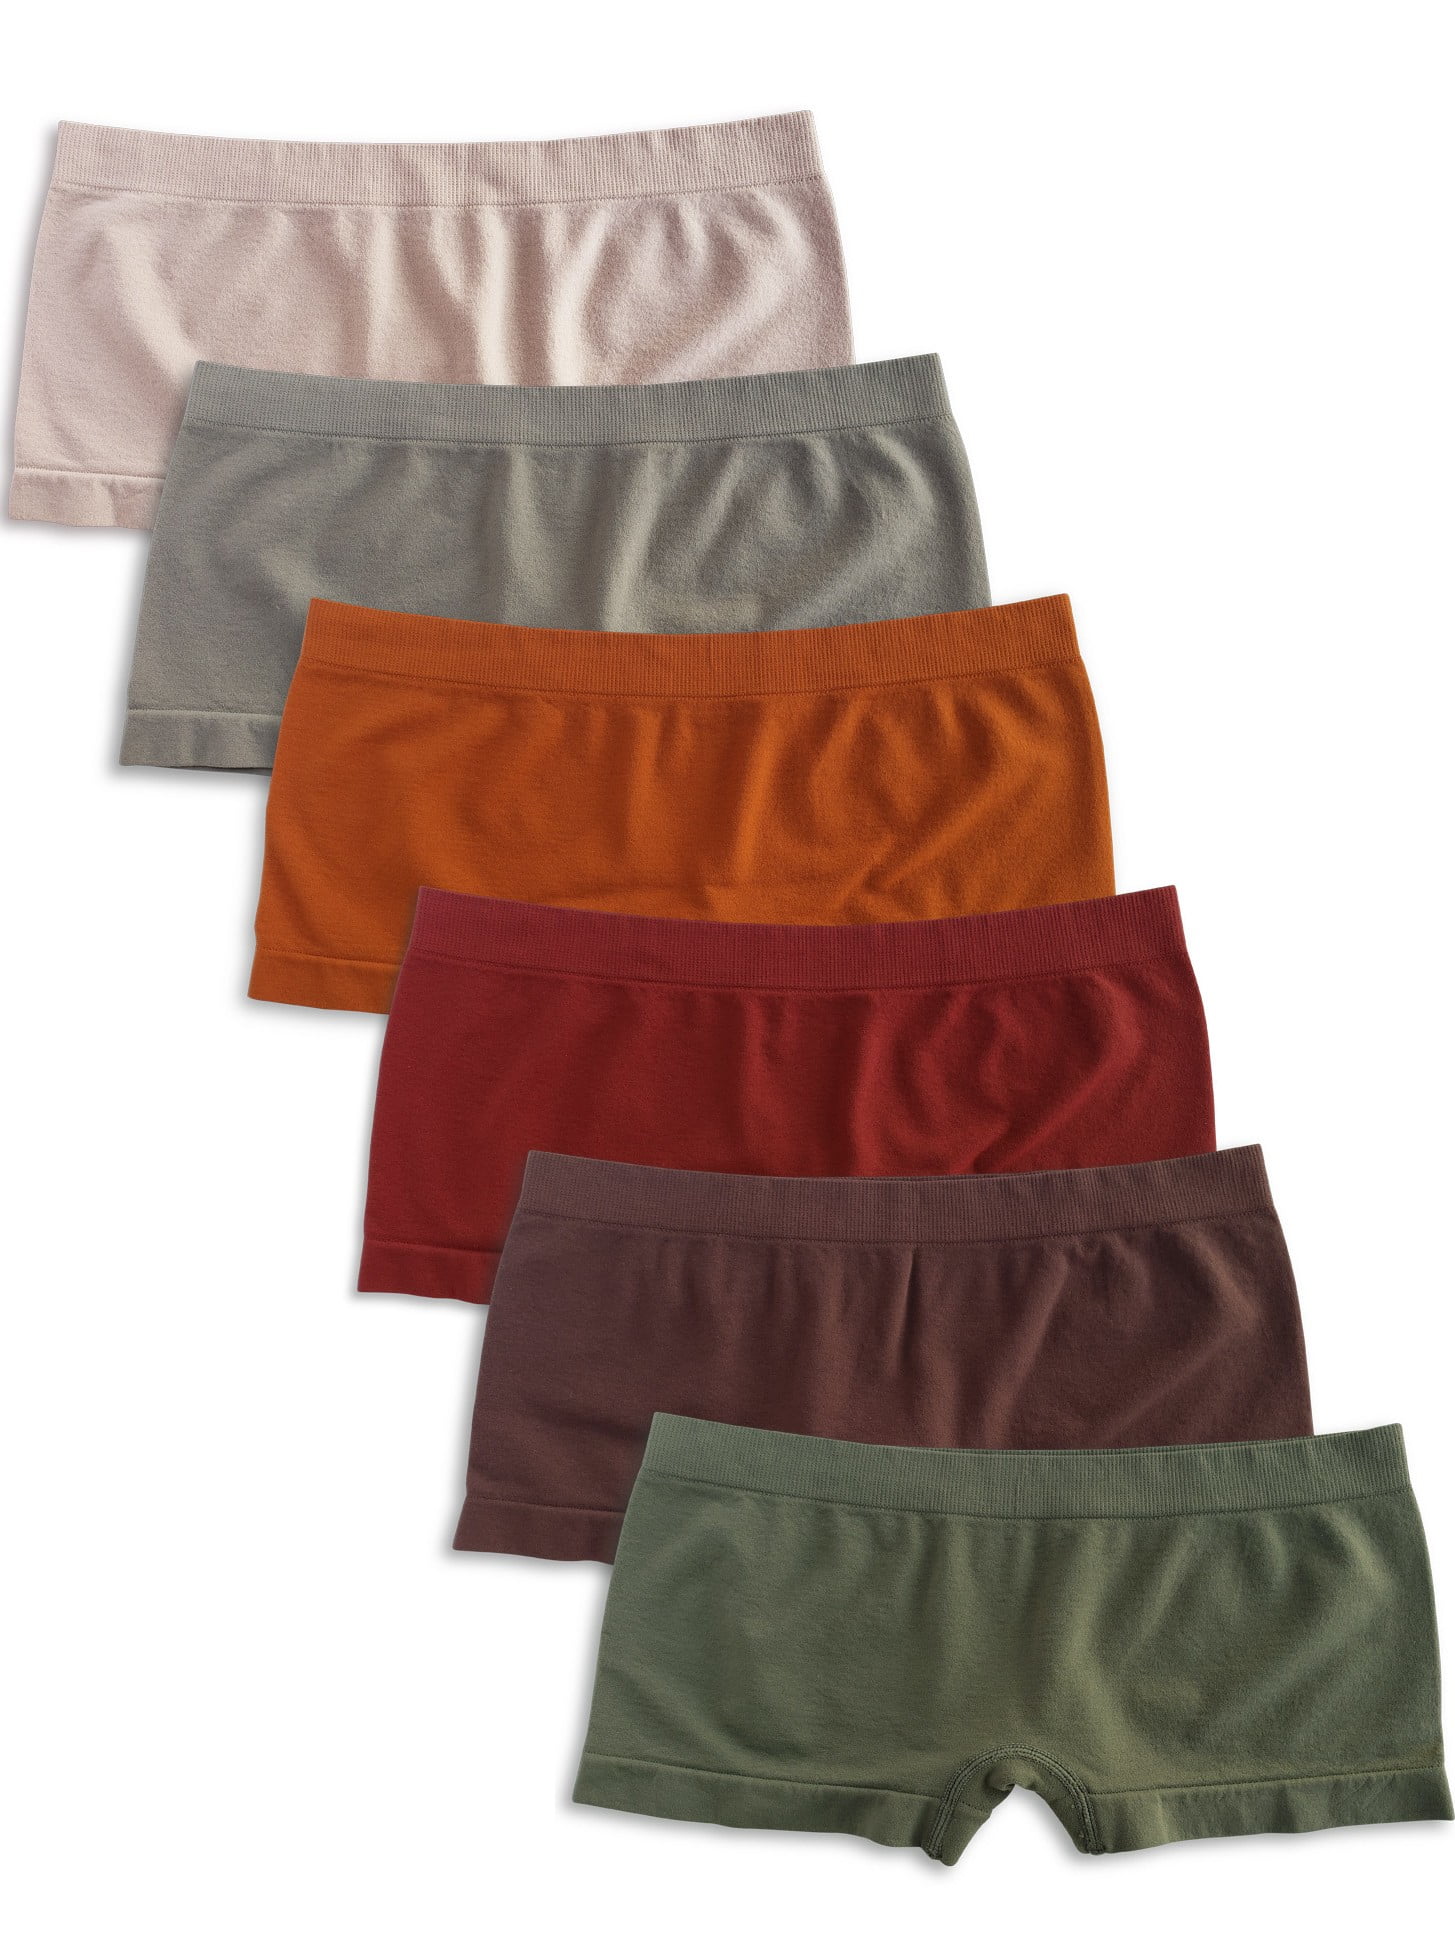 Kalon Women's 6 Pack Nylon Spandex Boyshort Panties